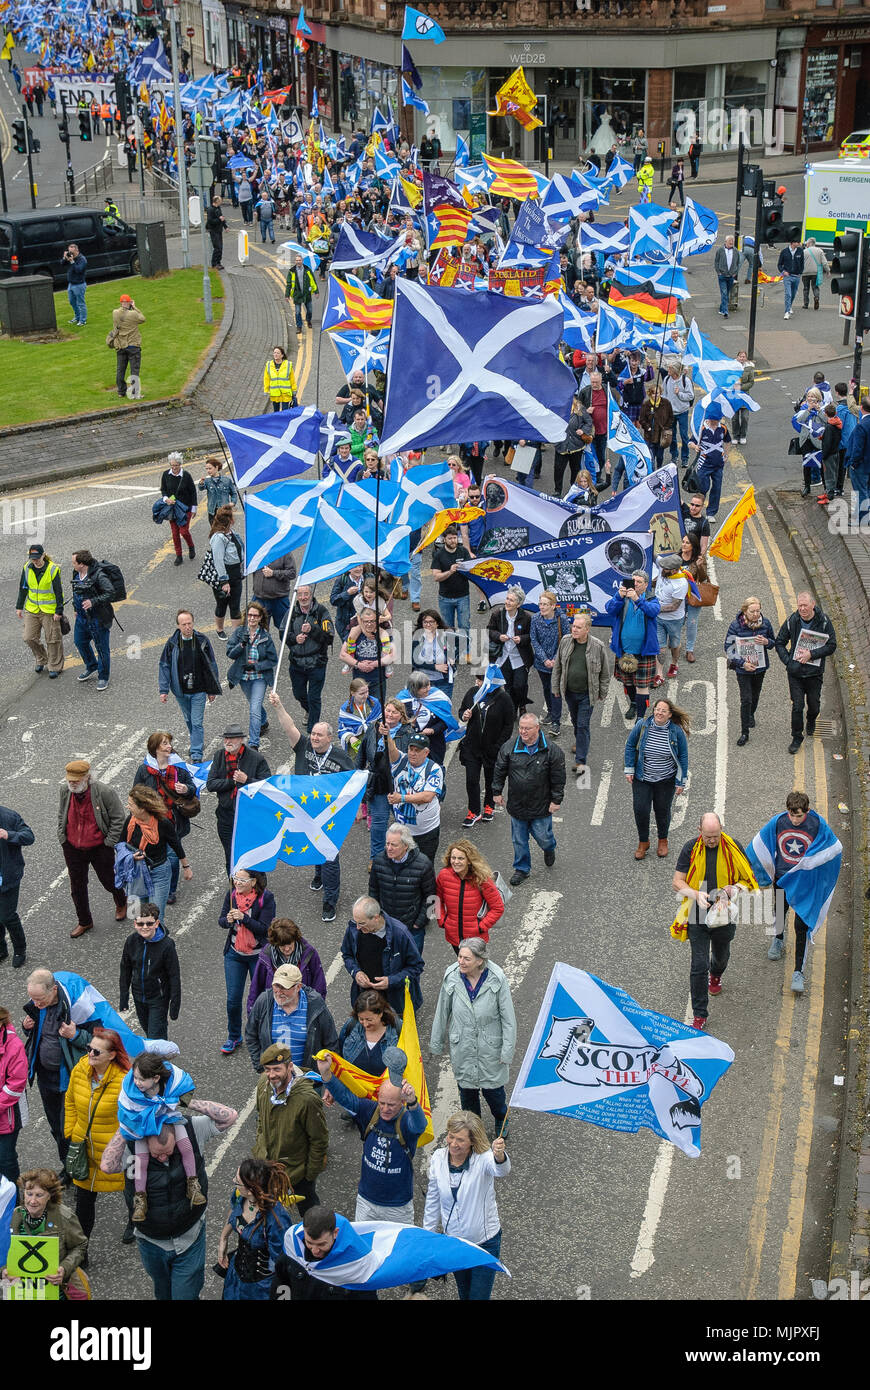 Un aperçu de la procession de mars. Des milliers de partisans de l'indépendance écossaise ont défilé à Glasgow dans le cadre de la 'tous' sous une bannière de protestation, comme la coalition vise à exécuter de tels cas jusqu'à ce que l'Écosse est "libre". Banque D'Images